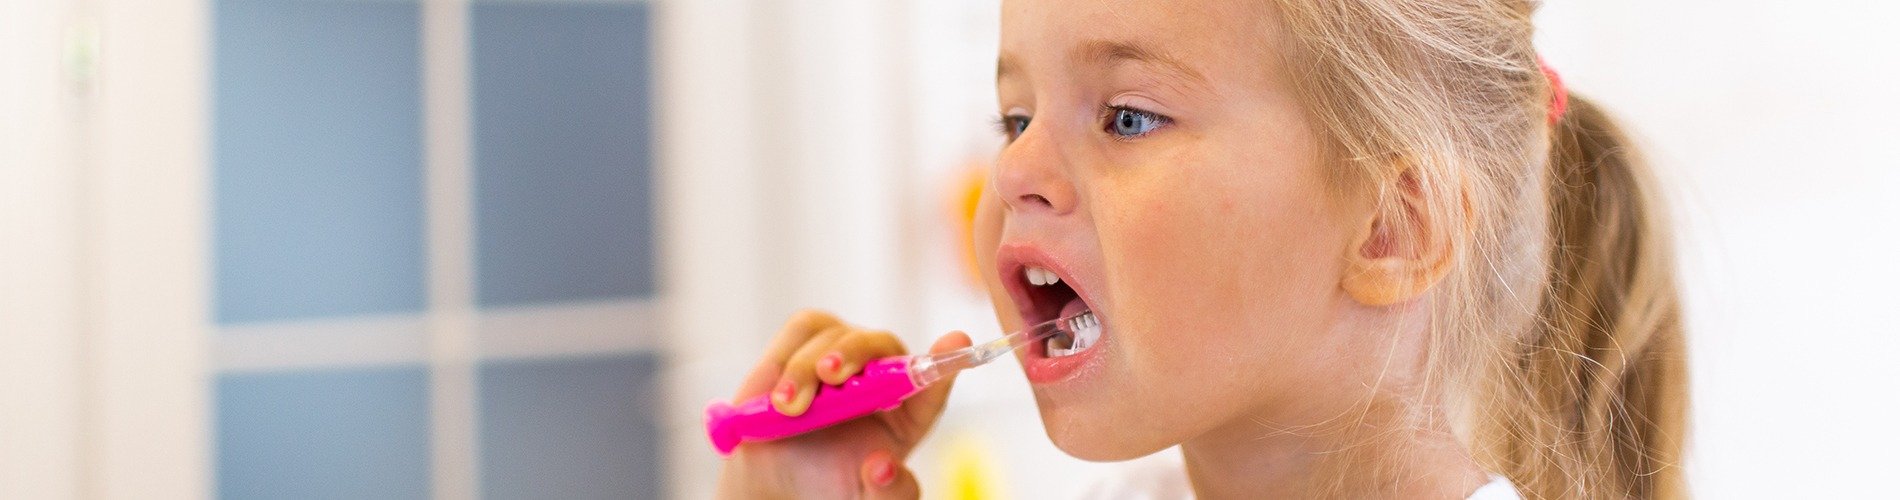 La salud dental de los niños